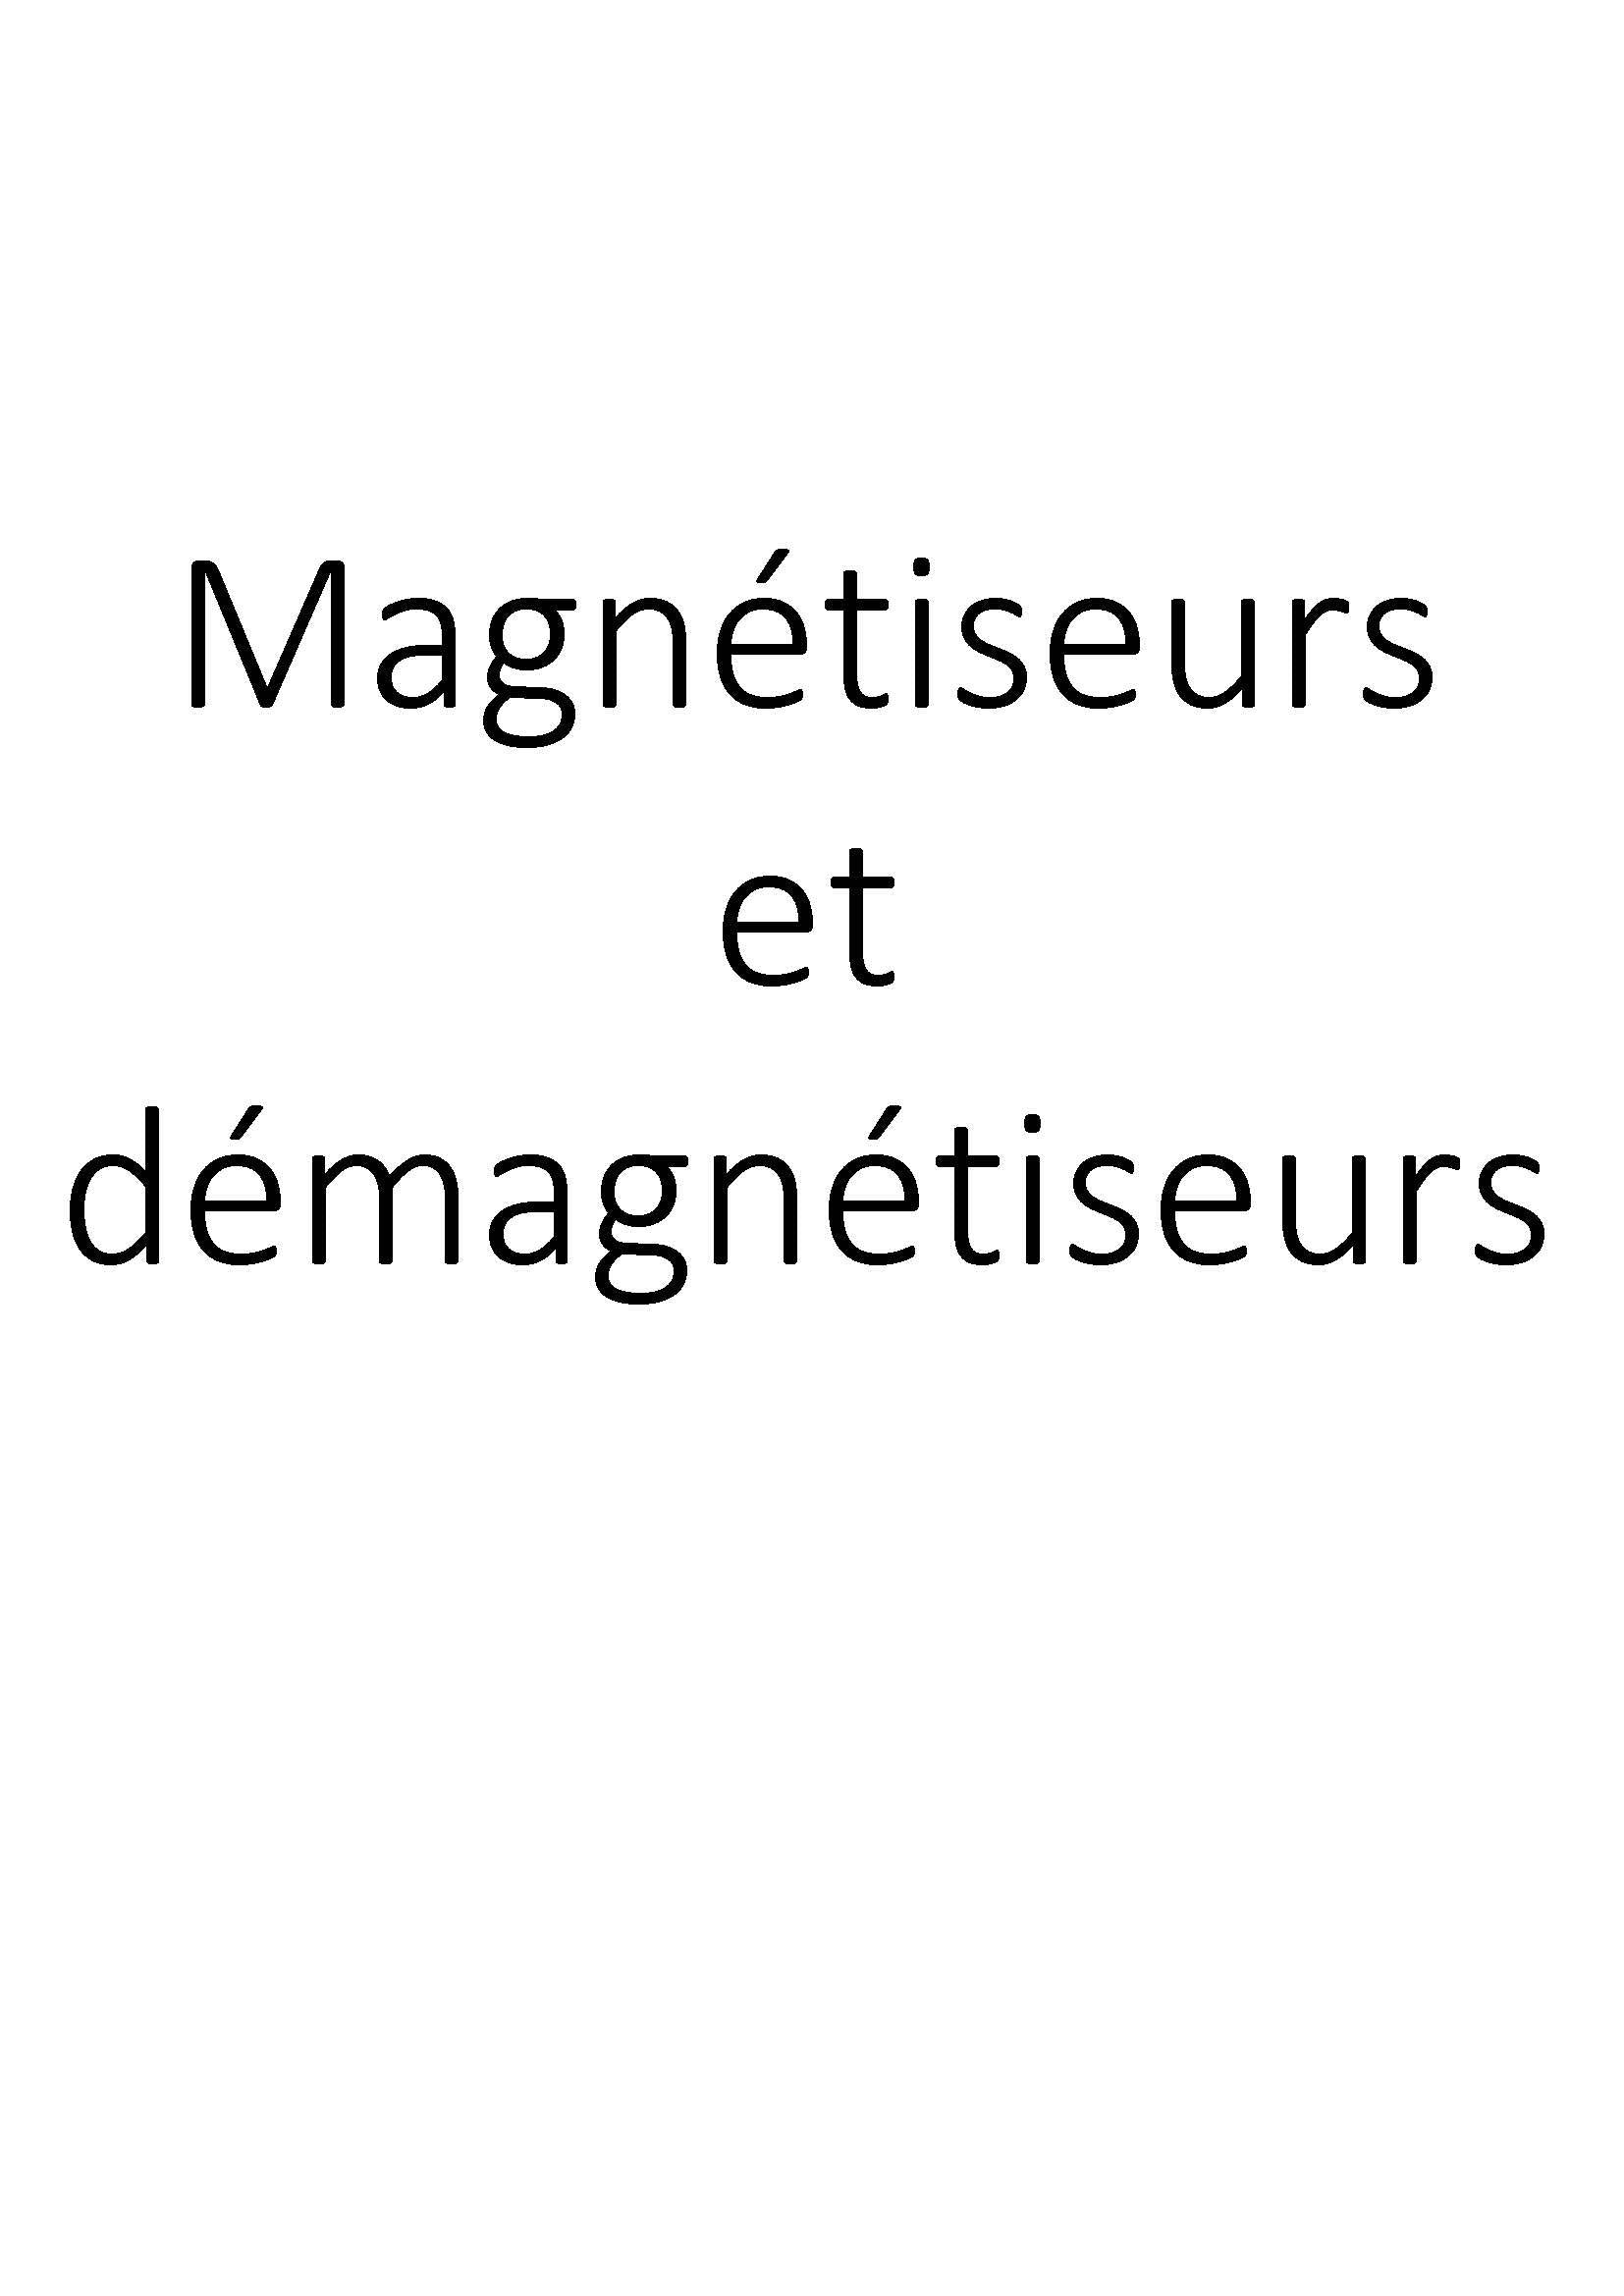 Magnétiseurs et démagnétiseurs clicktofournisseur.com